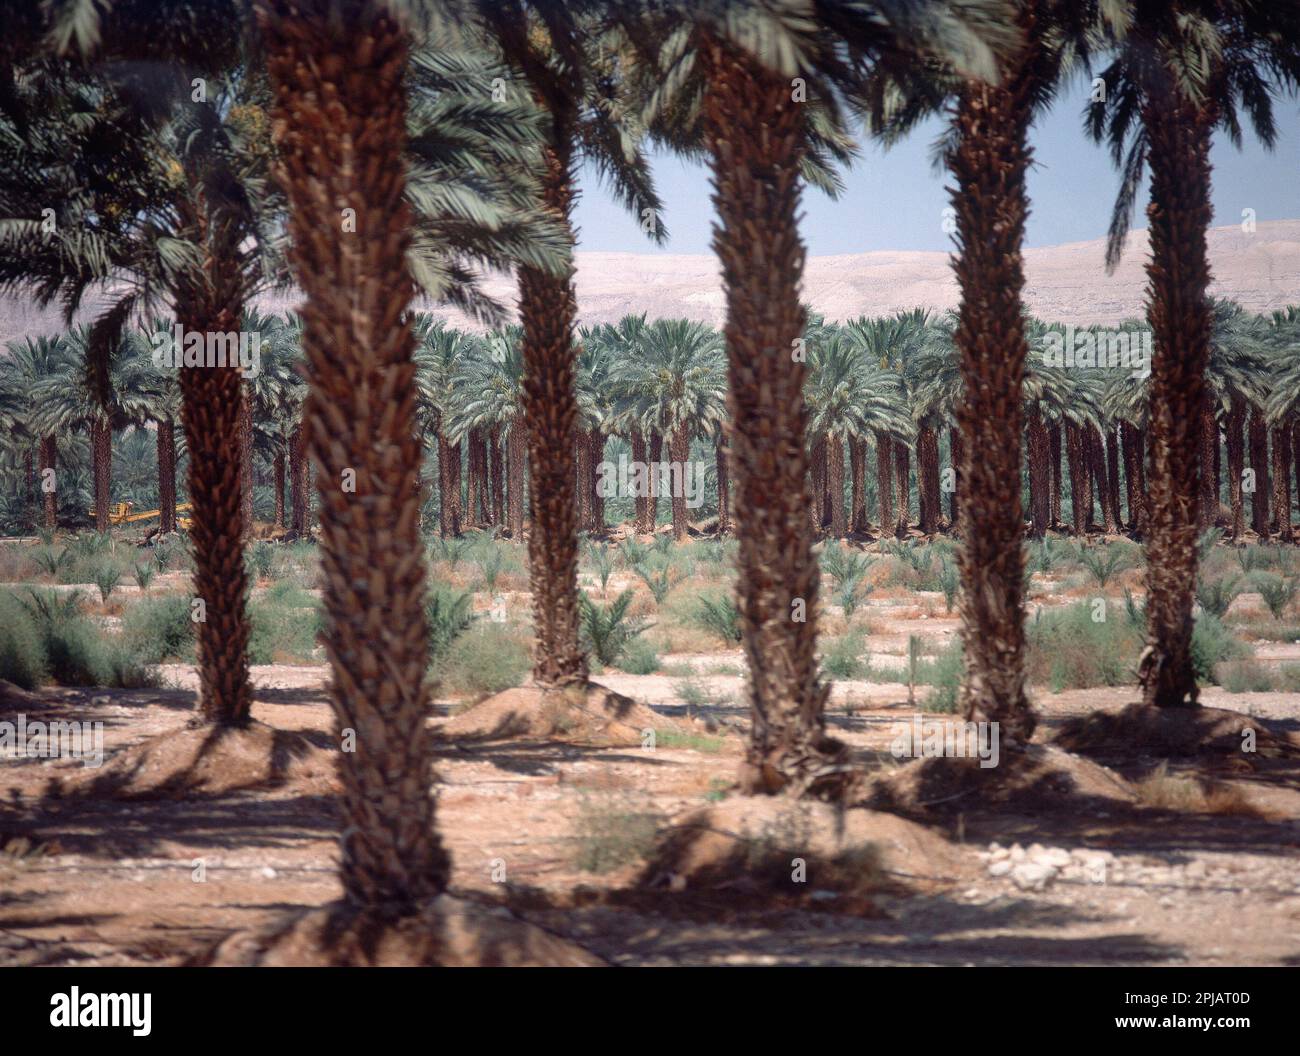 OASIS DE PALMERAS - FOTO AÑOS 90. Località: MAR MUERTO. Nación. ISRAELE. Foto Stock